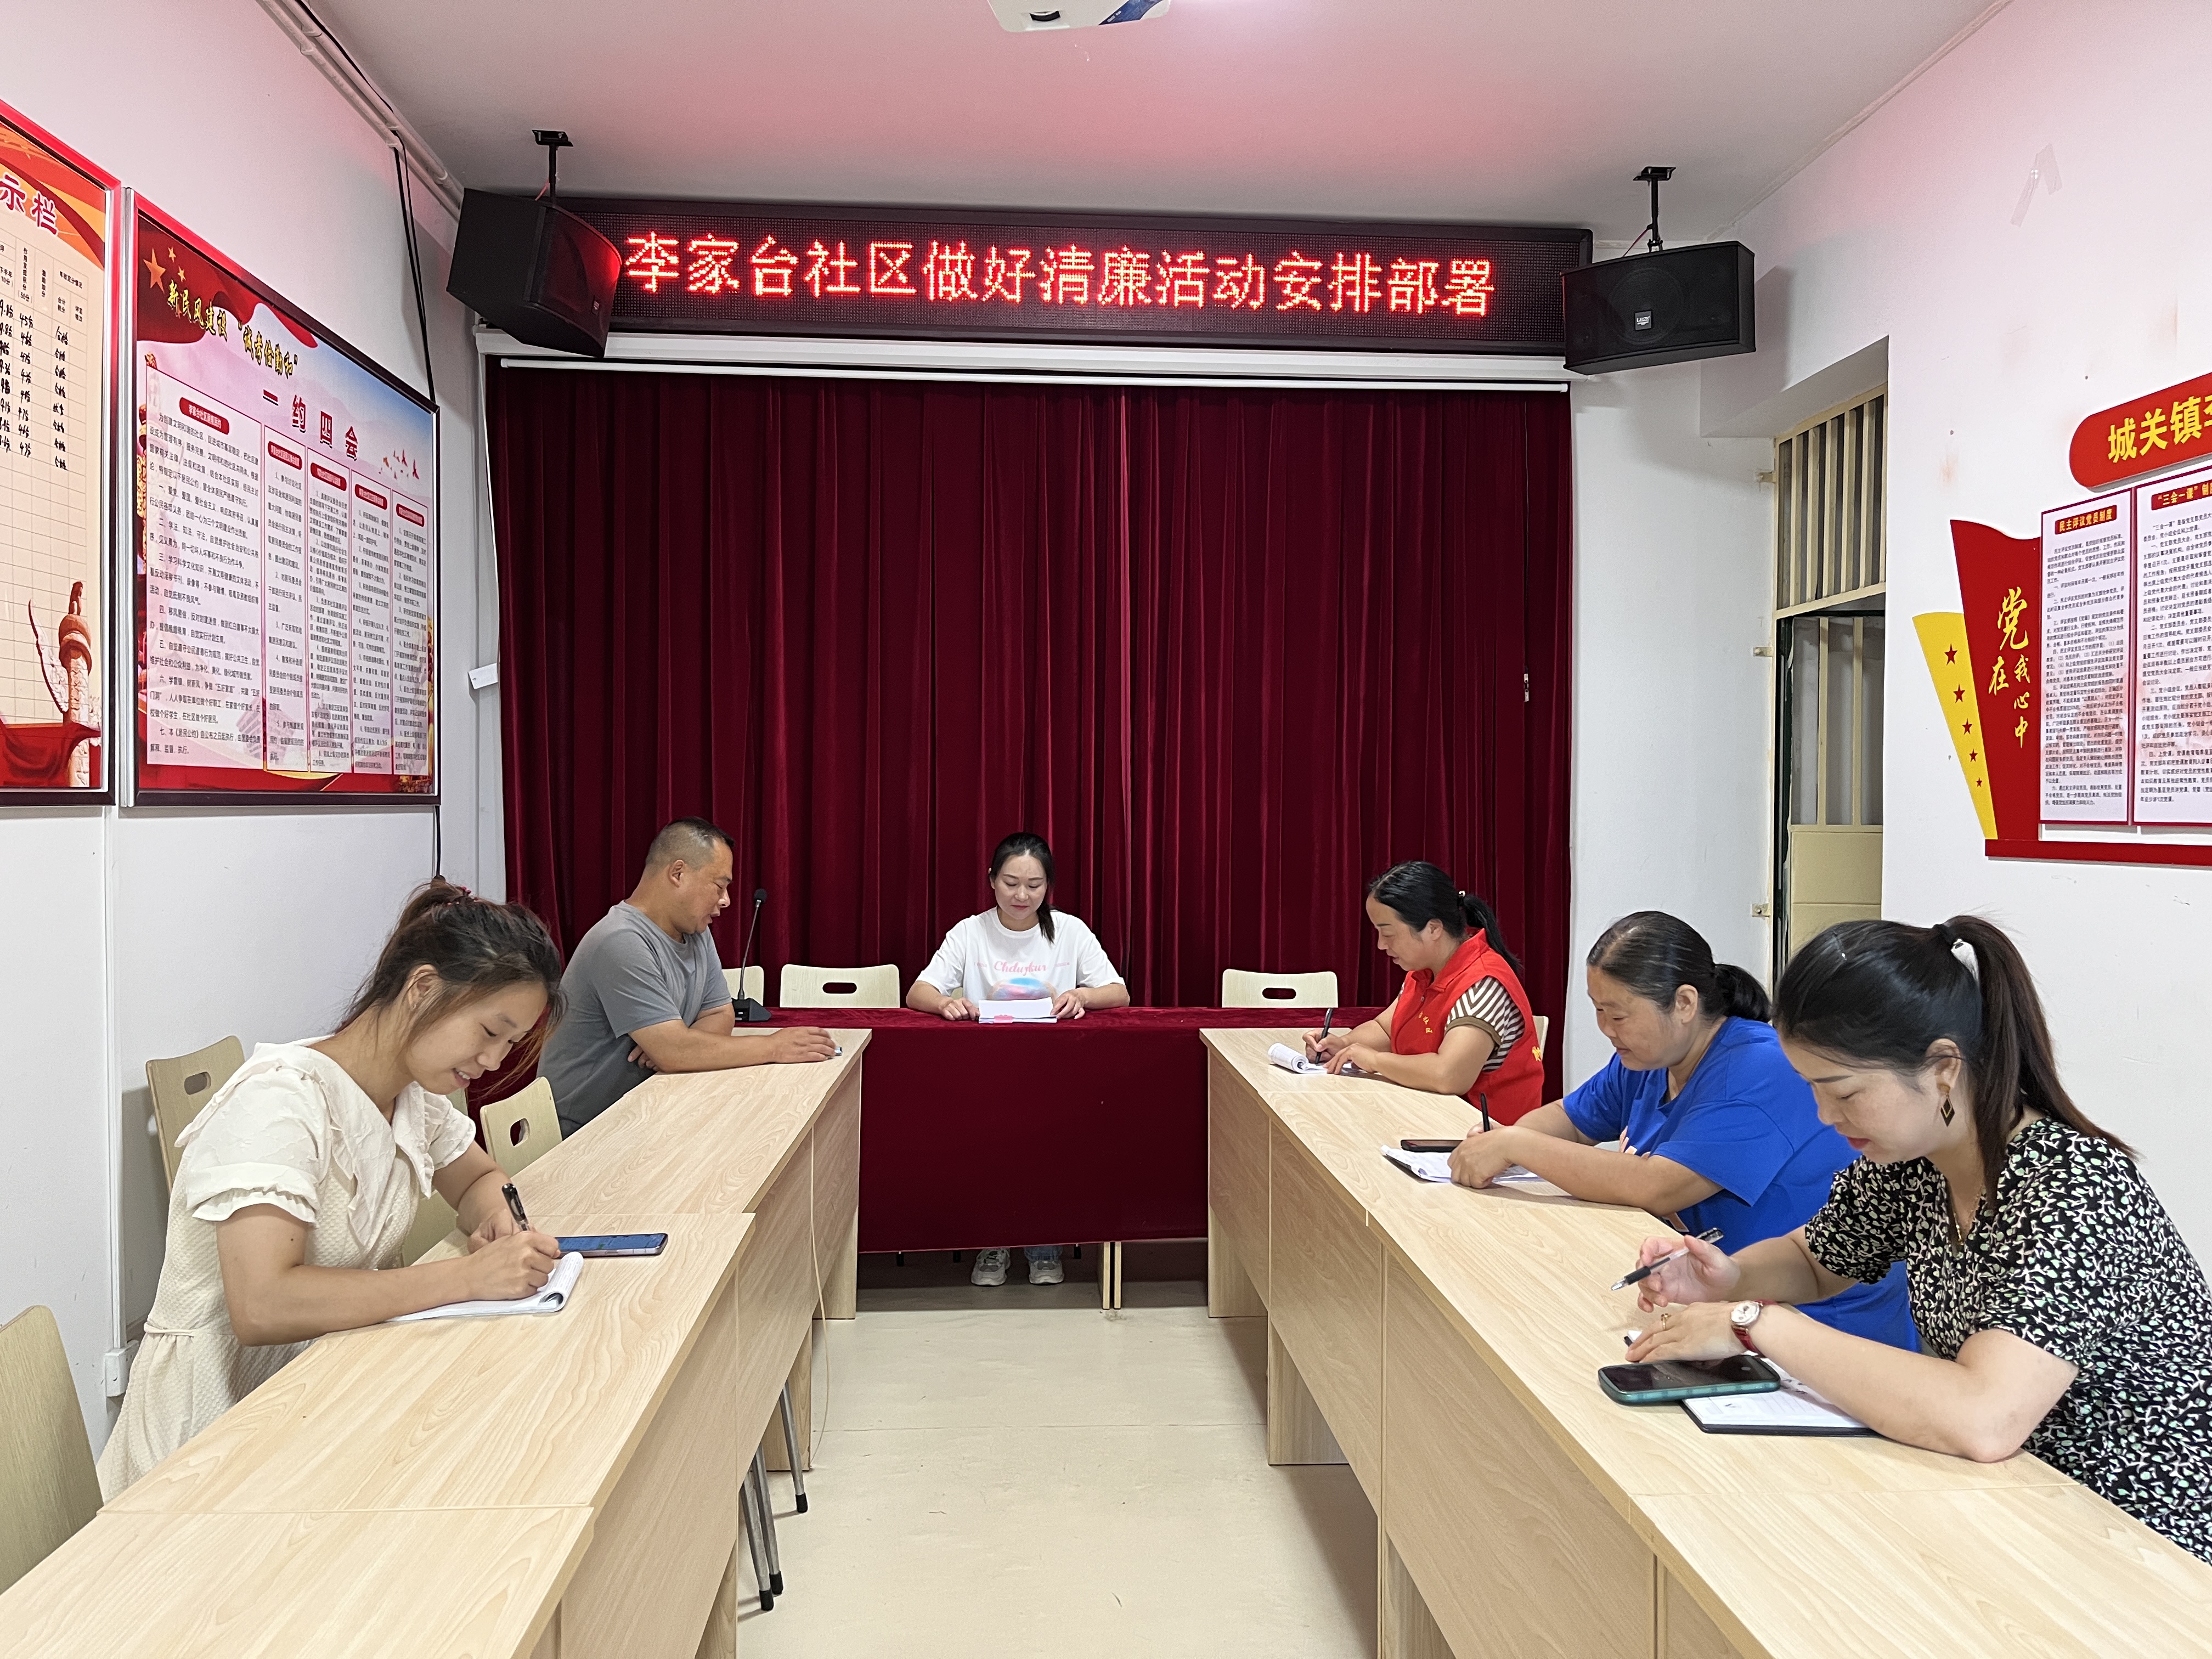 汉阴县城关镇李家台社区开展“倡导廉洁风尚 构建和谐社区”活动